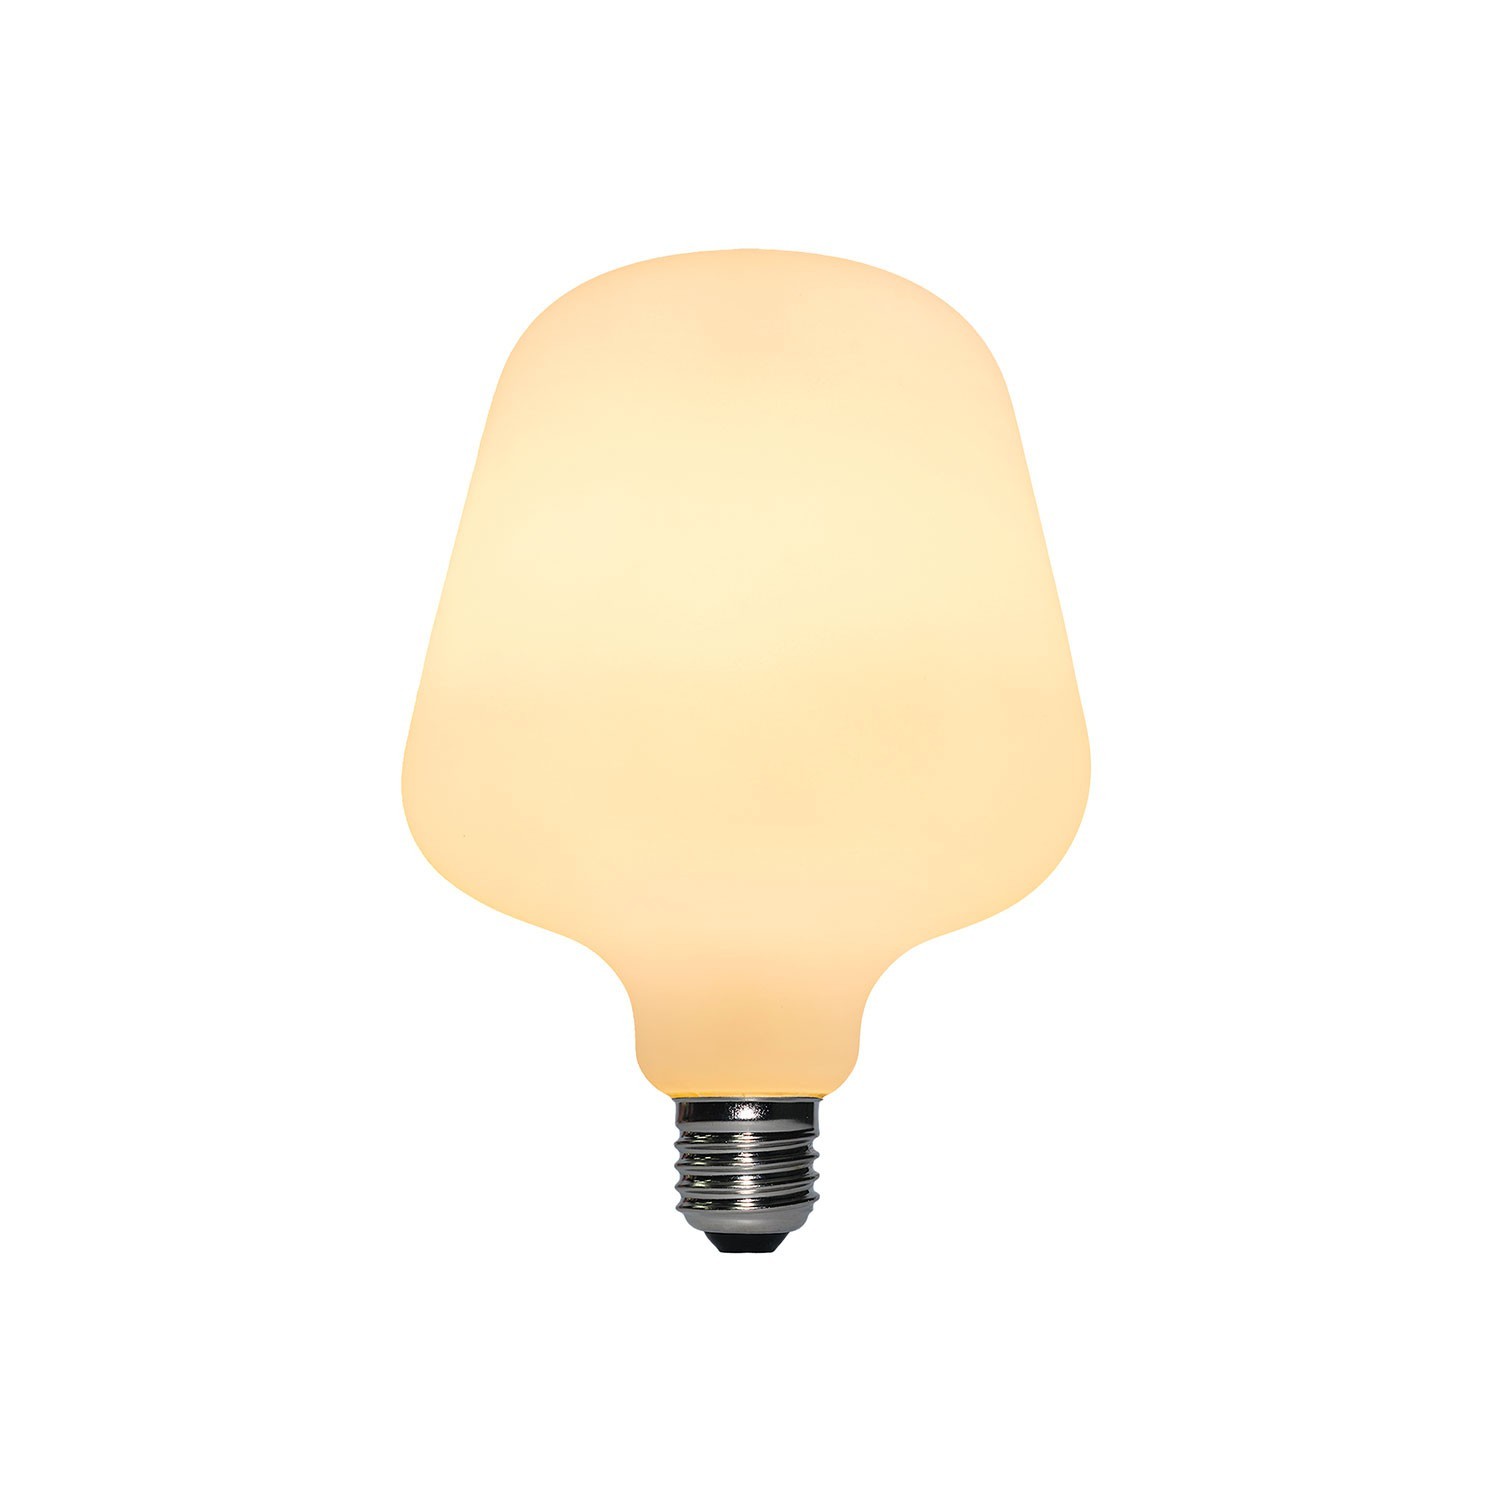 LED-Glühbirne Zante mit Porzellan-Effekt 6W 540Lm E27 2700K Dimmbar